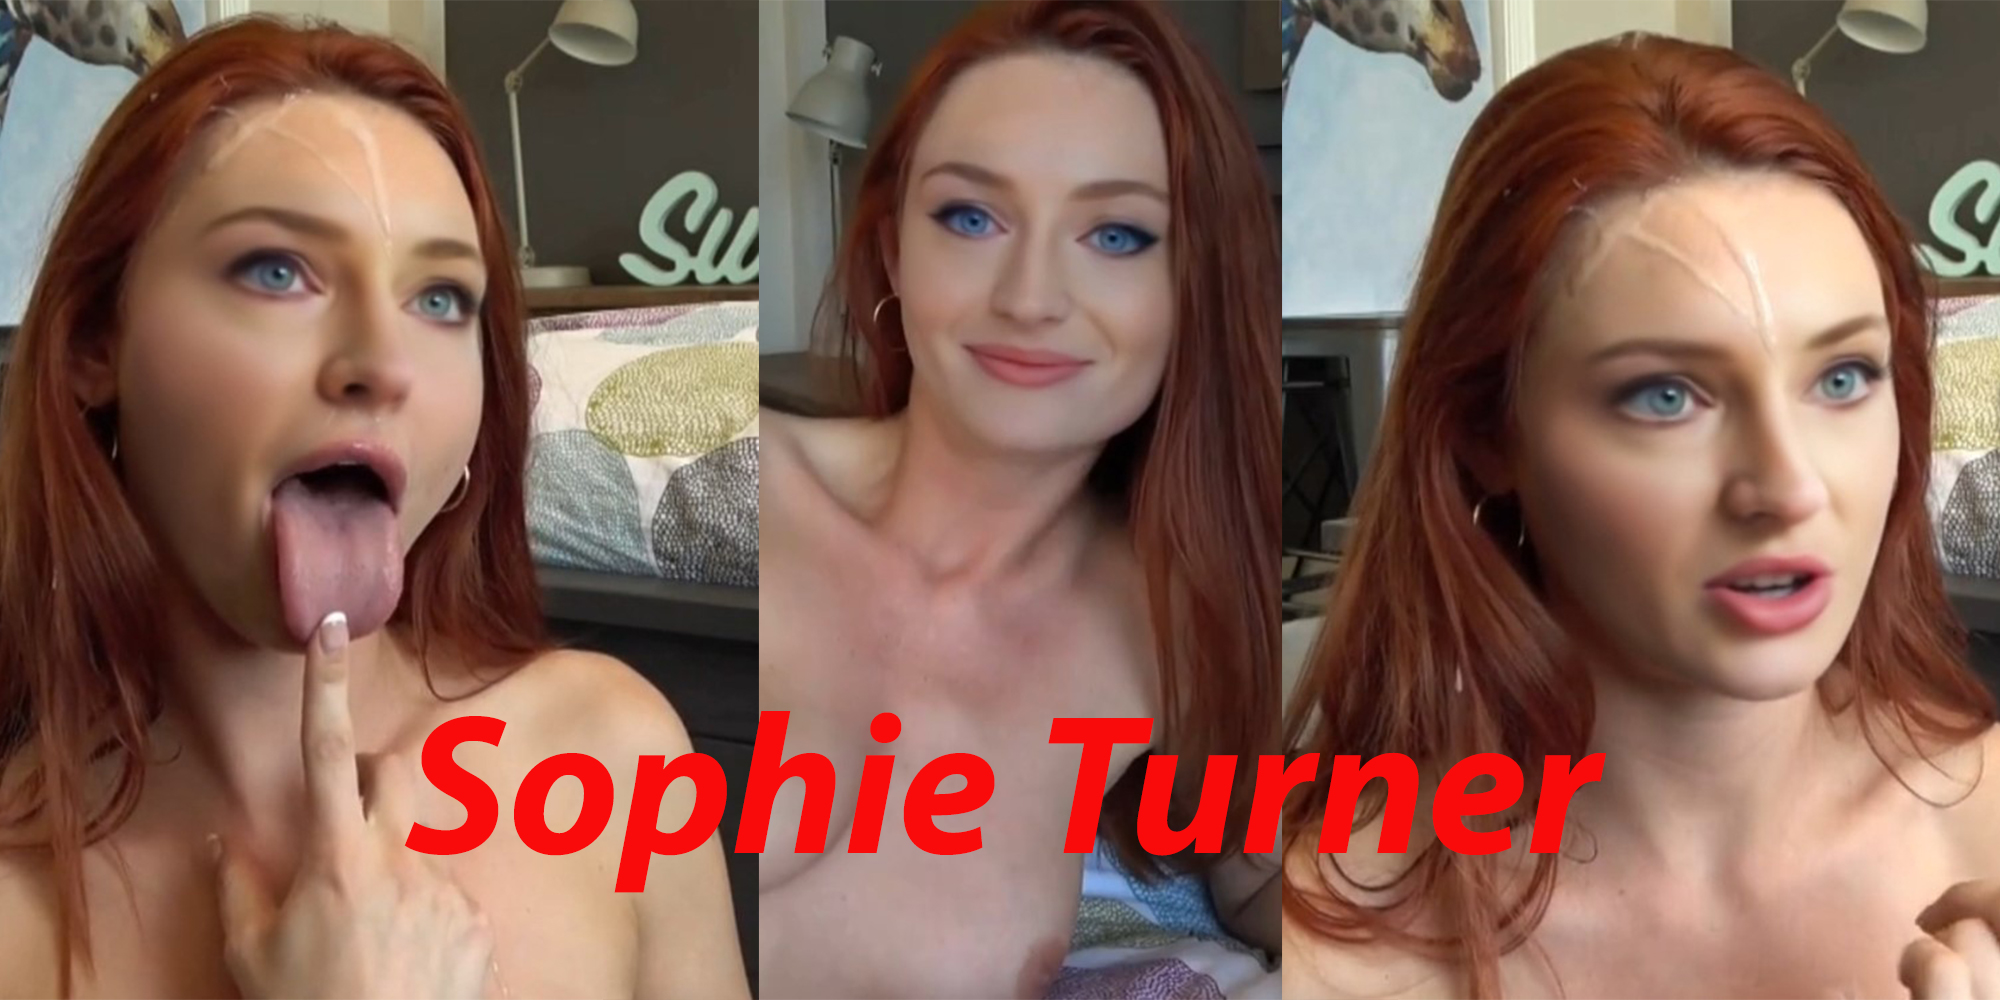 Sophie Turner let's talk and fuck